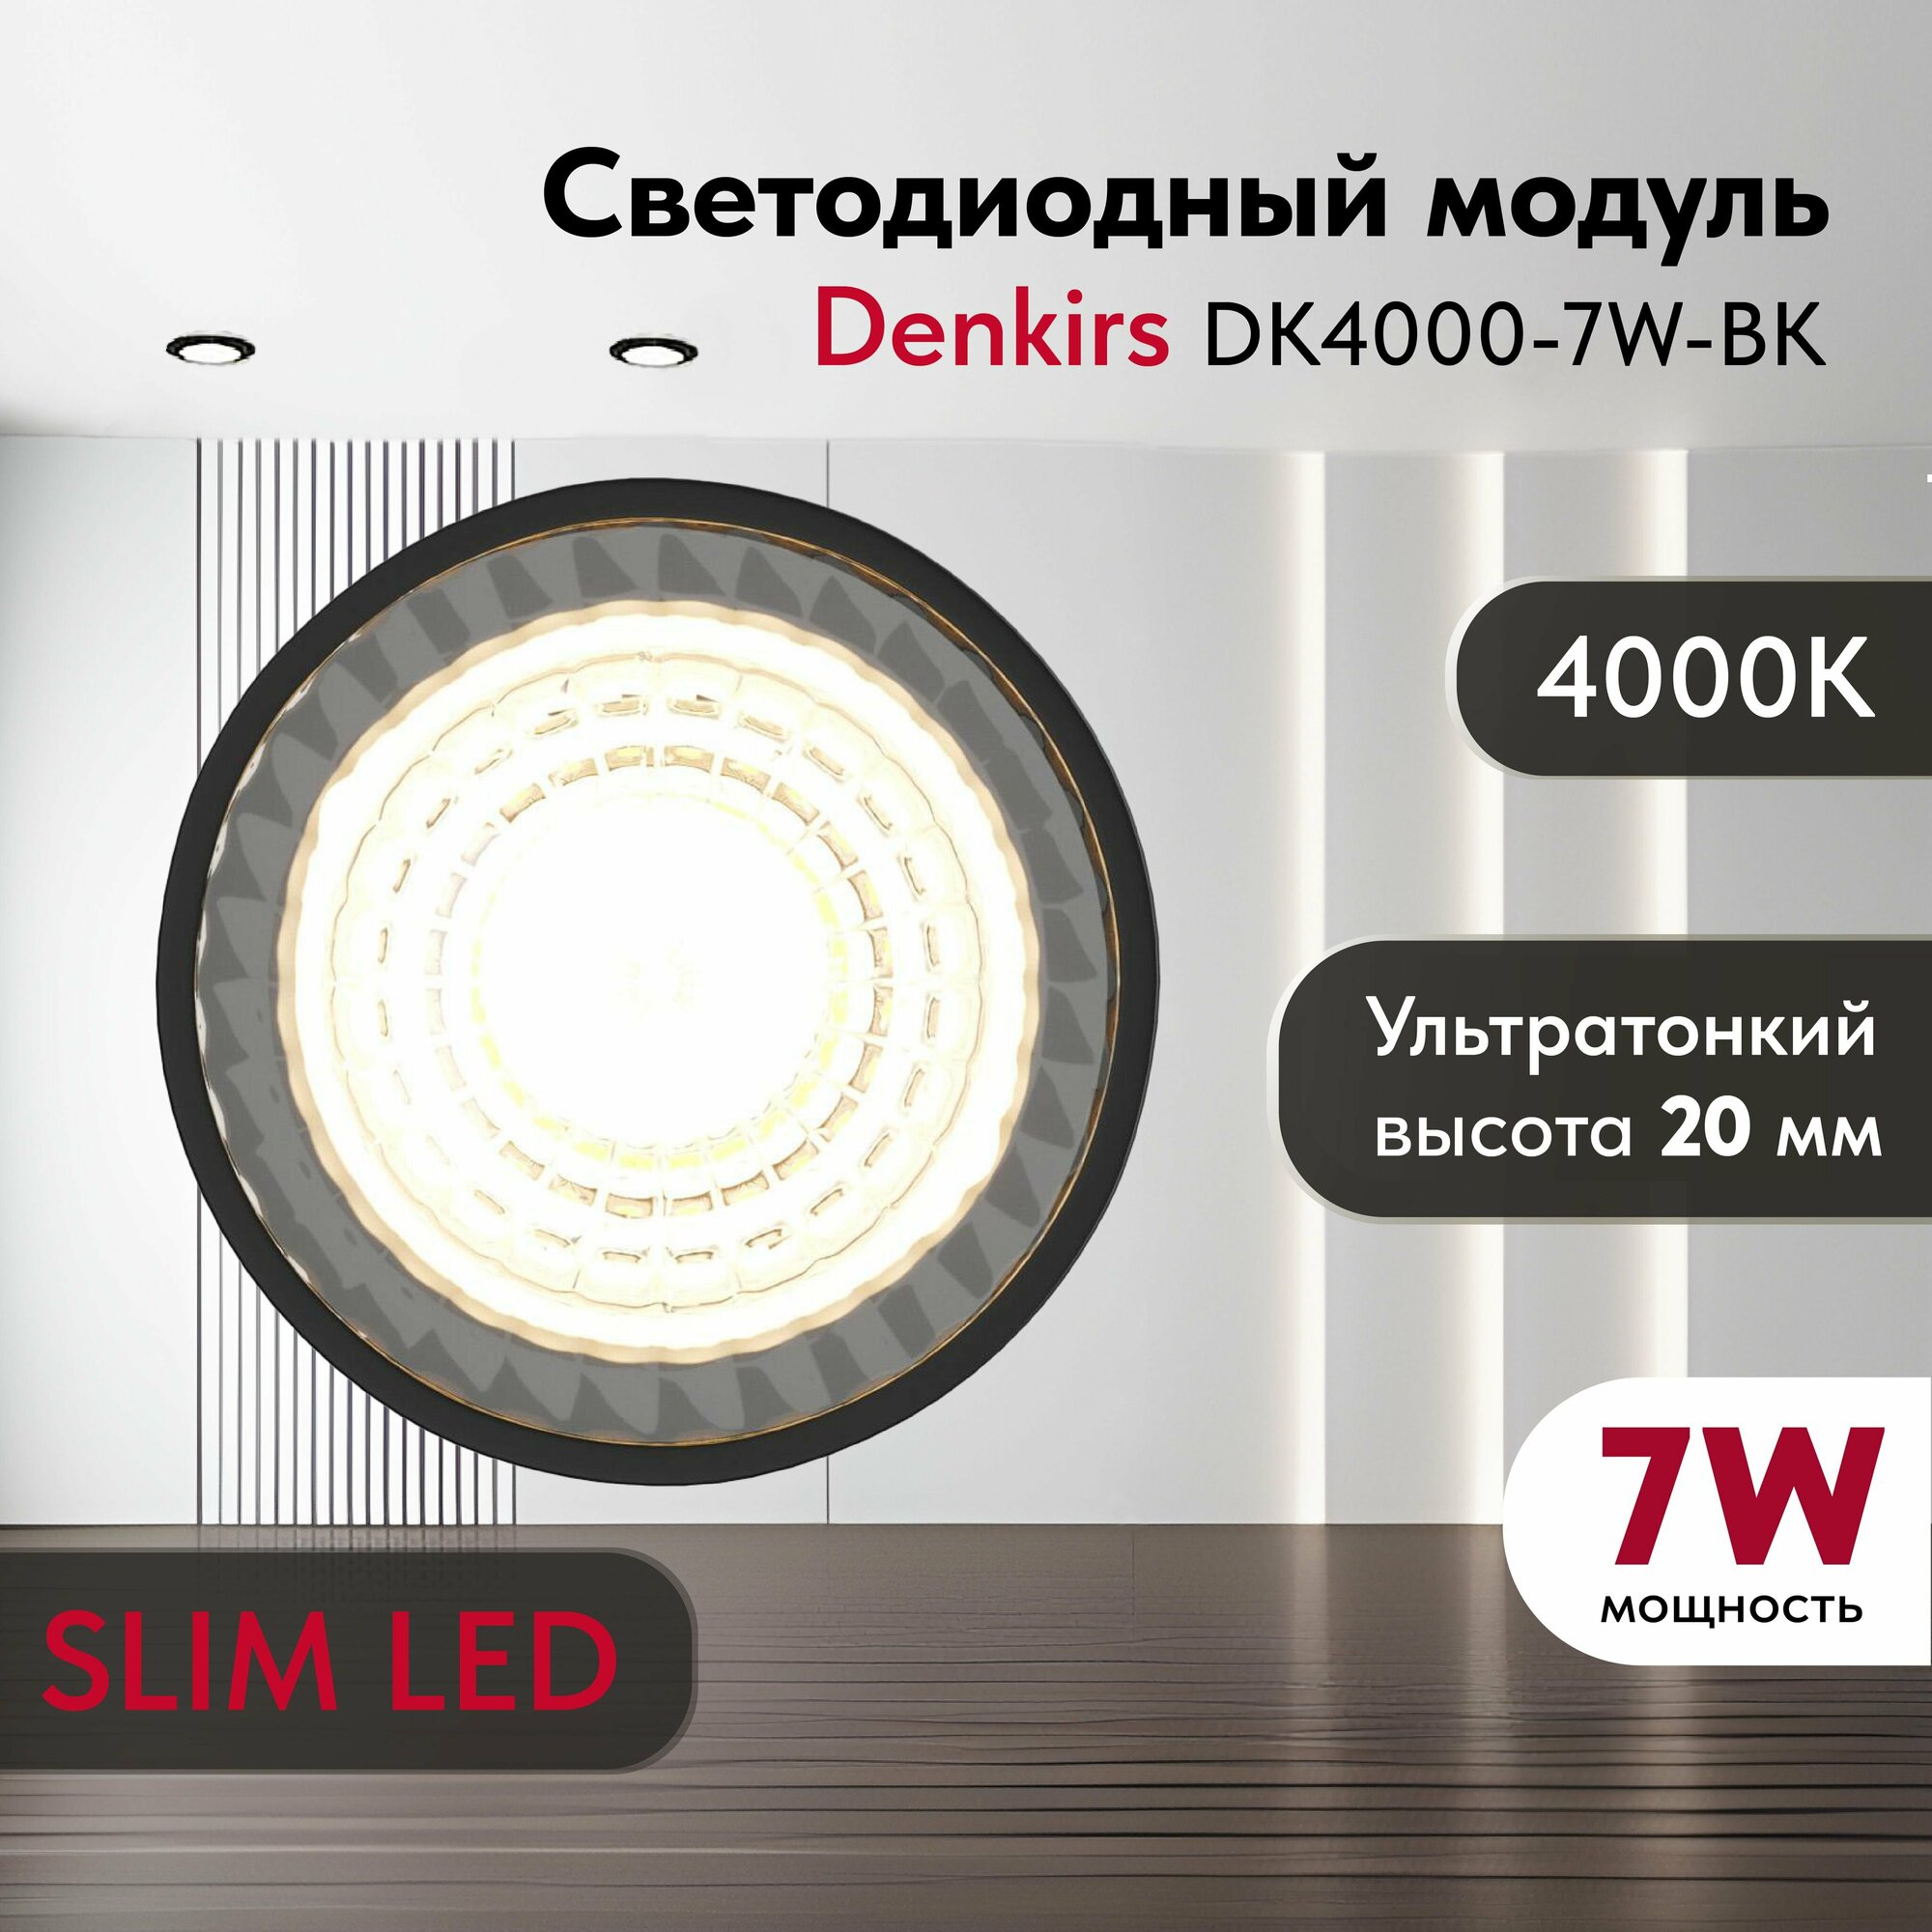 Светодиодный модуль DENKIRS DK4000-7W SLIM LED белый, керамический корпус